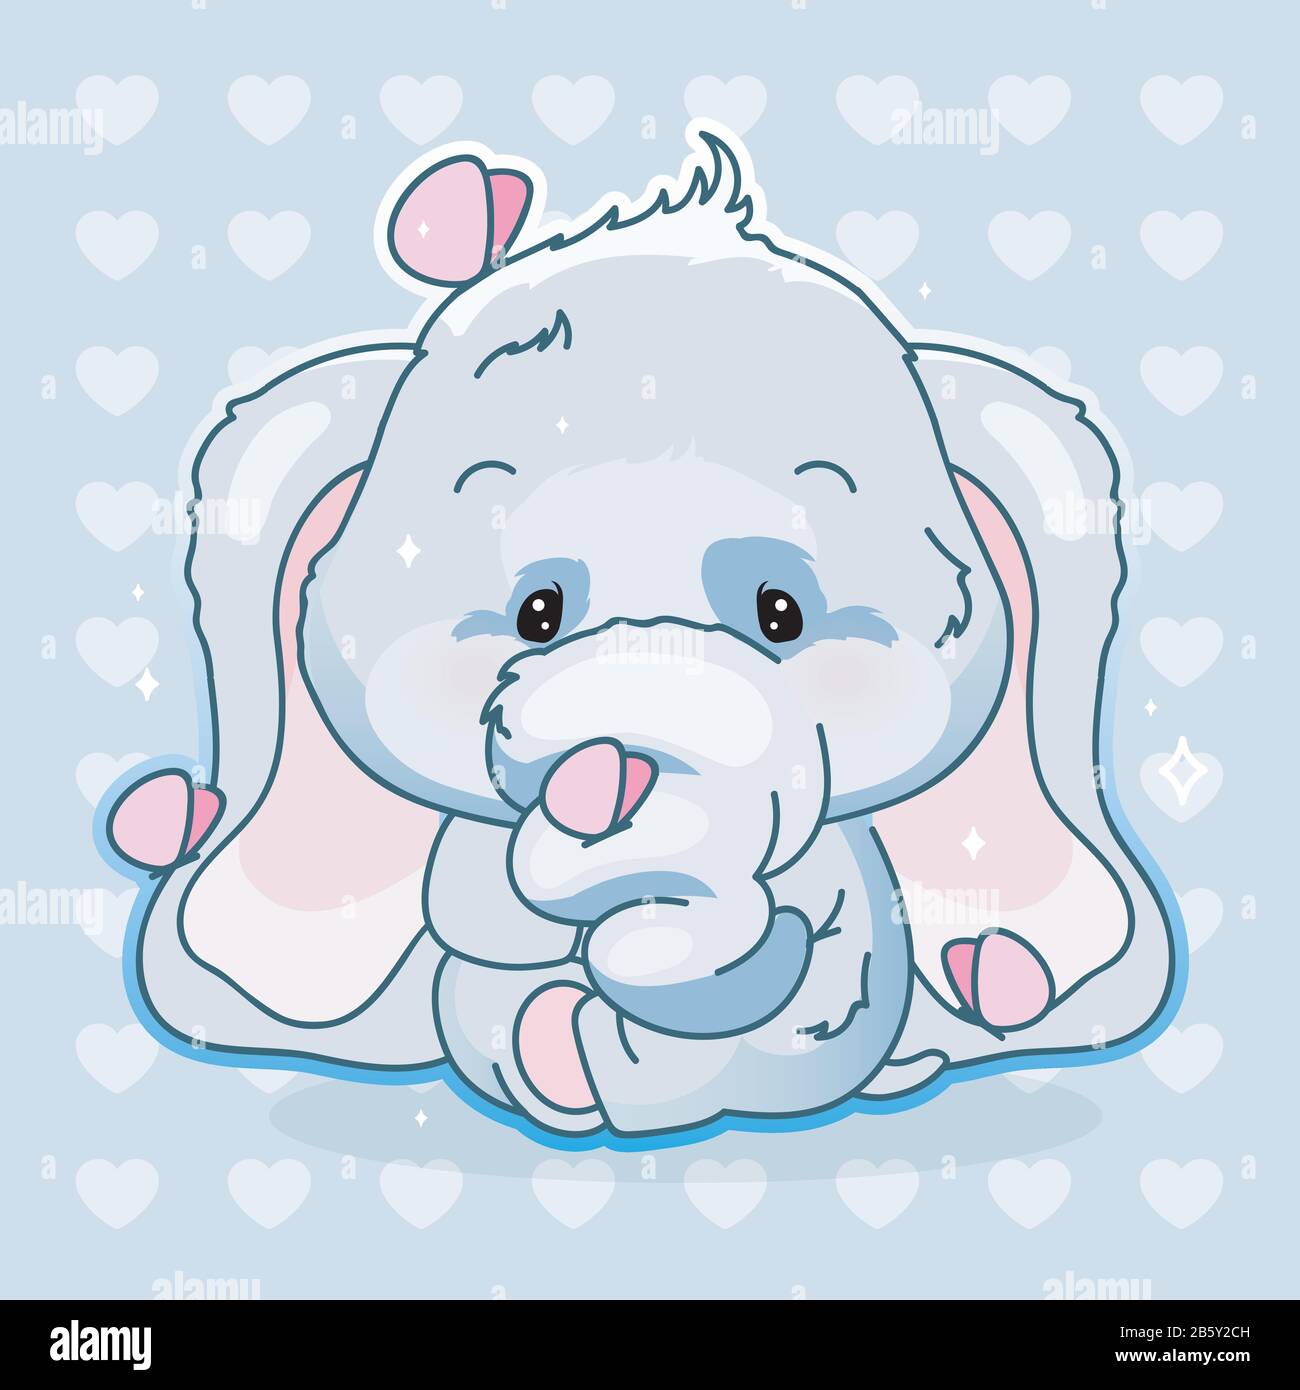 Pack d'autocollants de personnages de dessins animés kawaii pour  application mobile de bébé éléphant mignon.